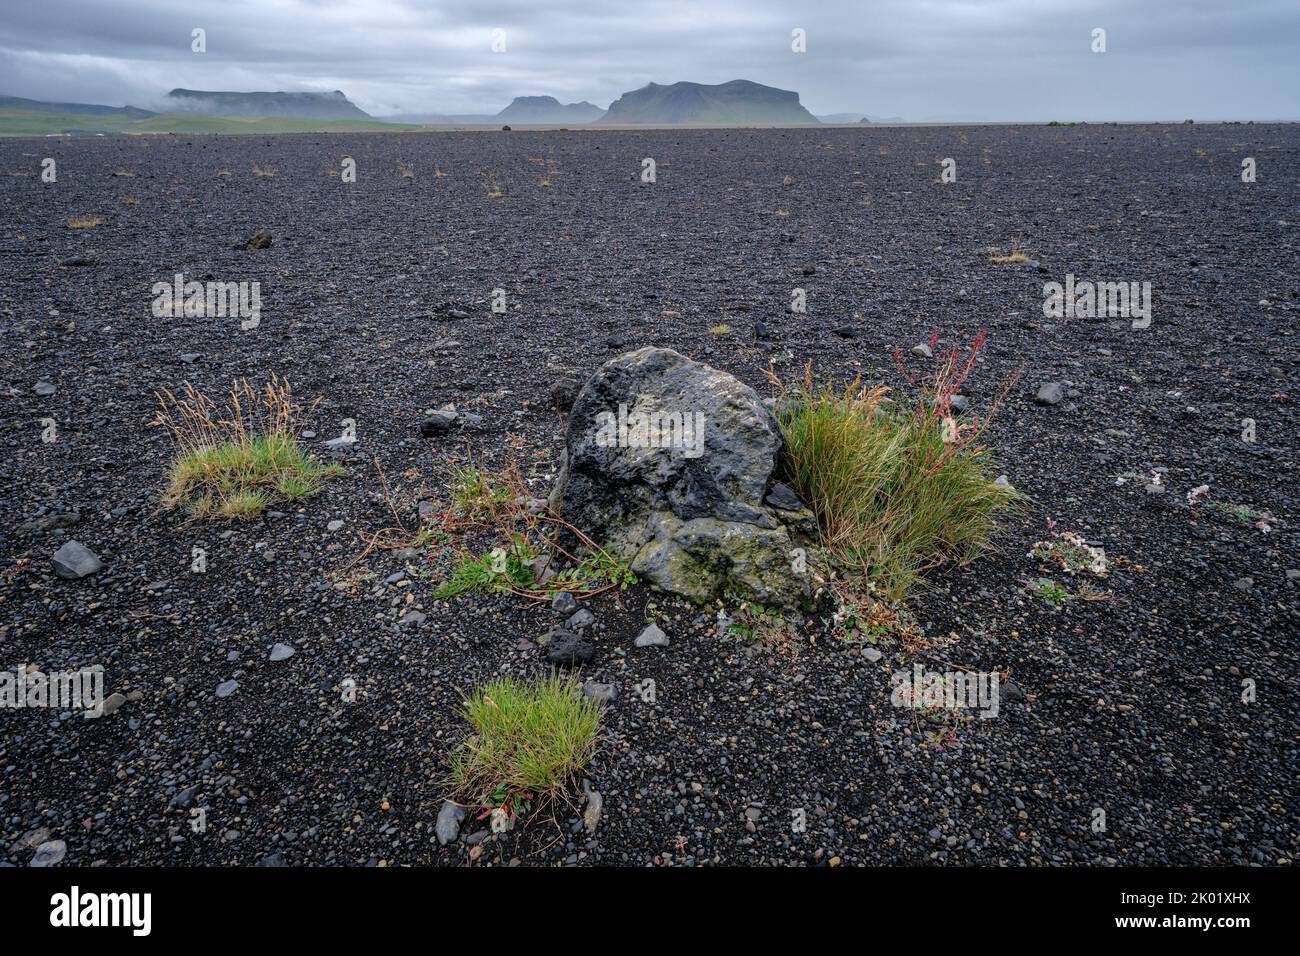 El desolado paisaje a través de la que se camina para llegar a los aviones naufragados en Solheimasandur, Islandia Foto de stock